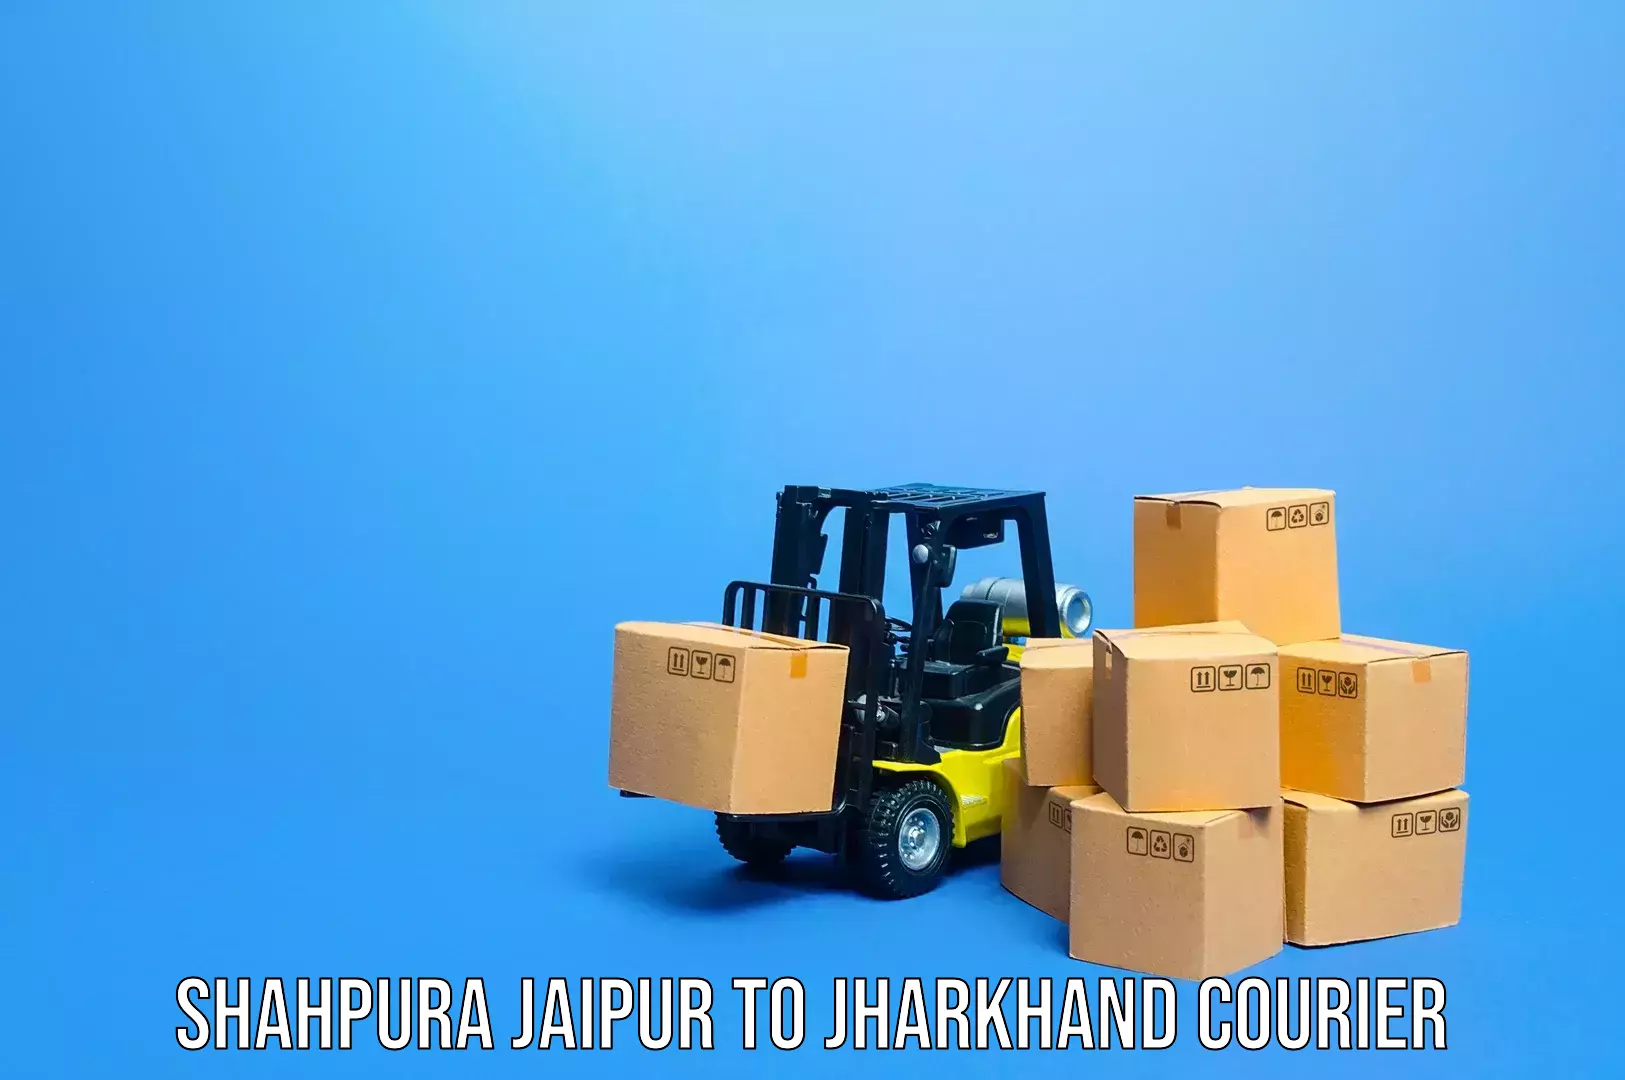 Luggage transport operations Shahpura Jaipur to Jamshedpur